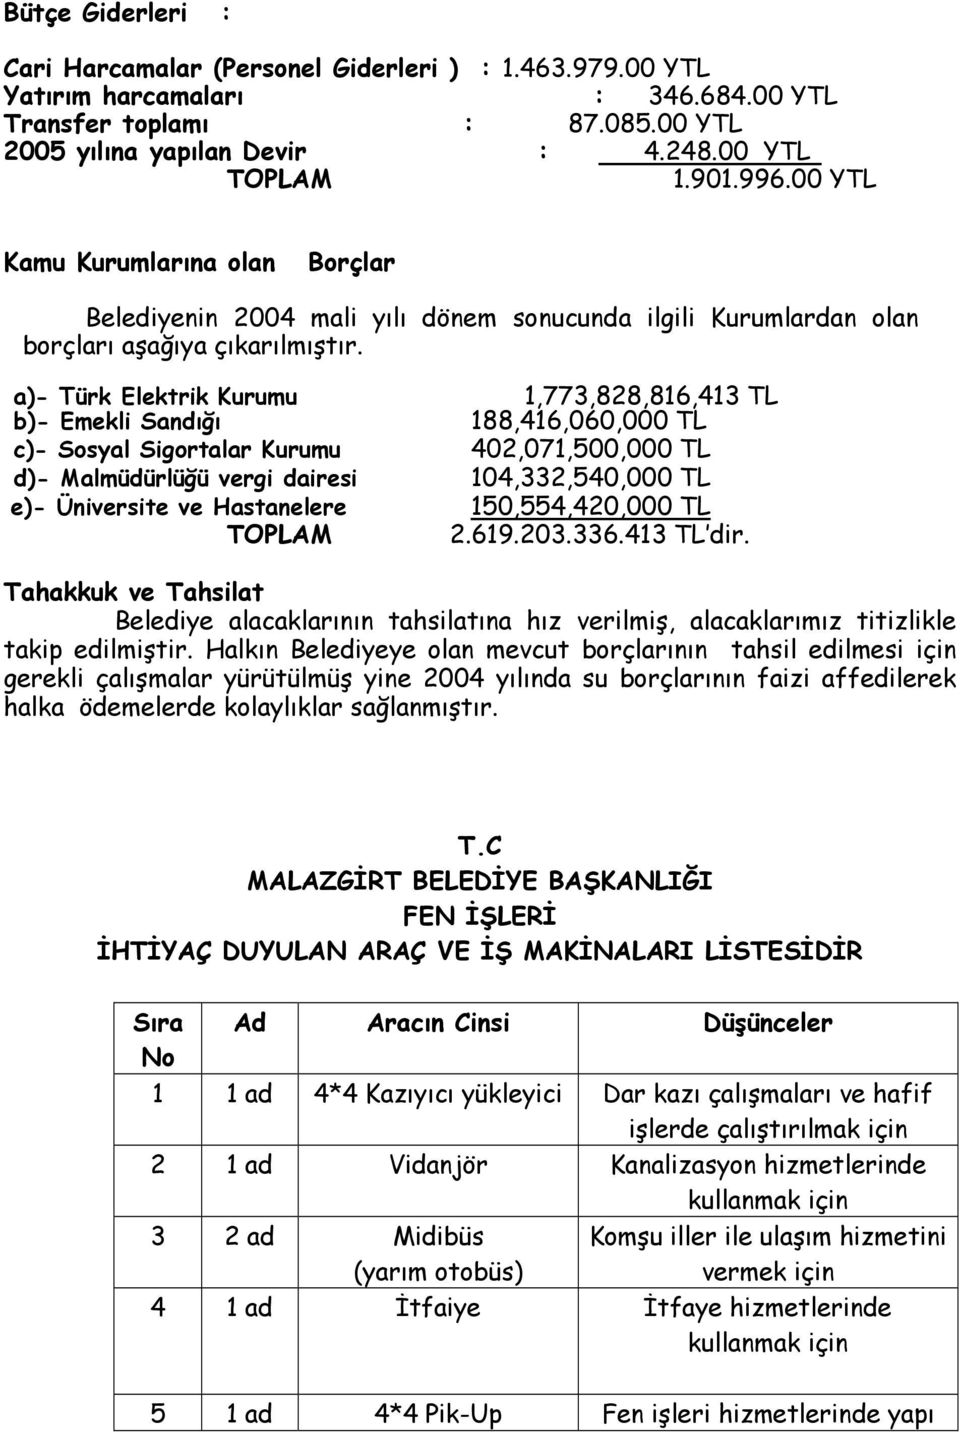 a)- Türk Elektrik Kurumu b)- Emekli Sandığı 1,773,828,816,413 TL 188,416,060,000 TL c)- Sosyal Sigortalar Kurumu 402,071,500,000 TL d)- Malmüdürlüğü vergi dairesi 104,332,540,000 TL e)- Üniversite ve